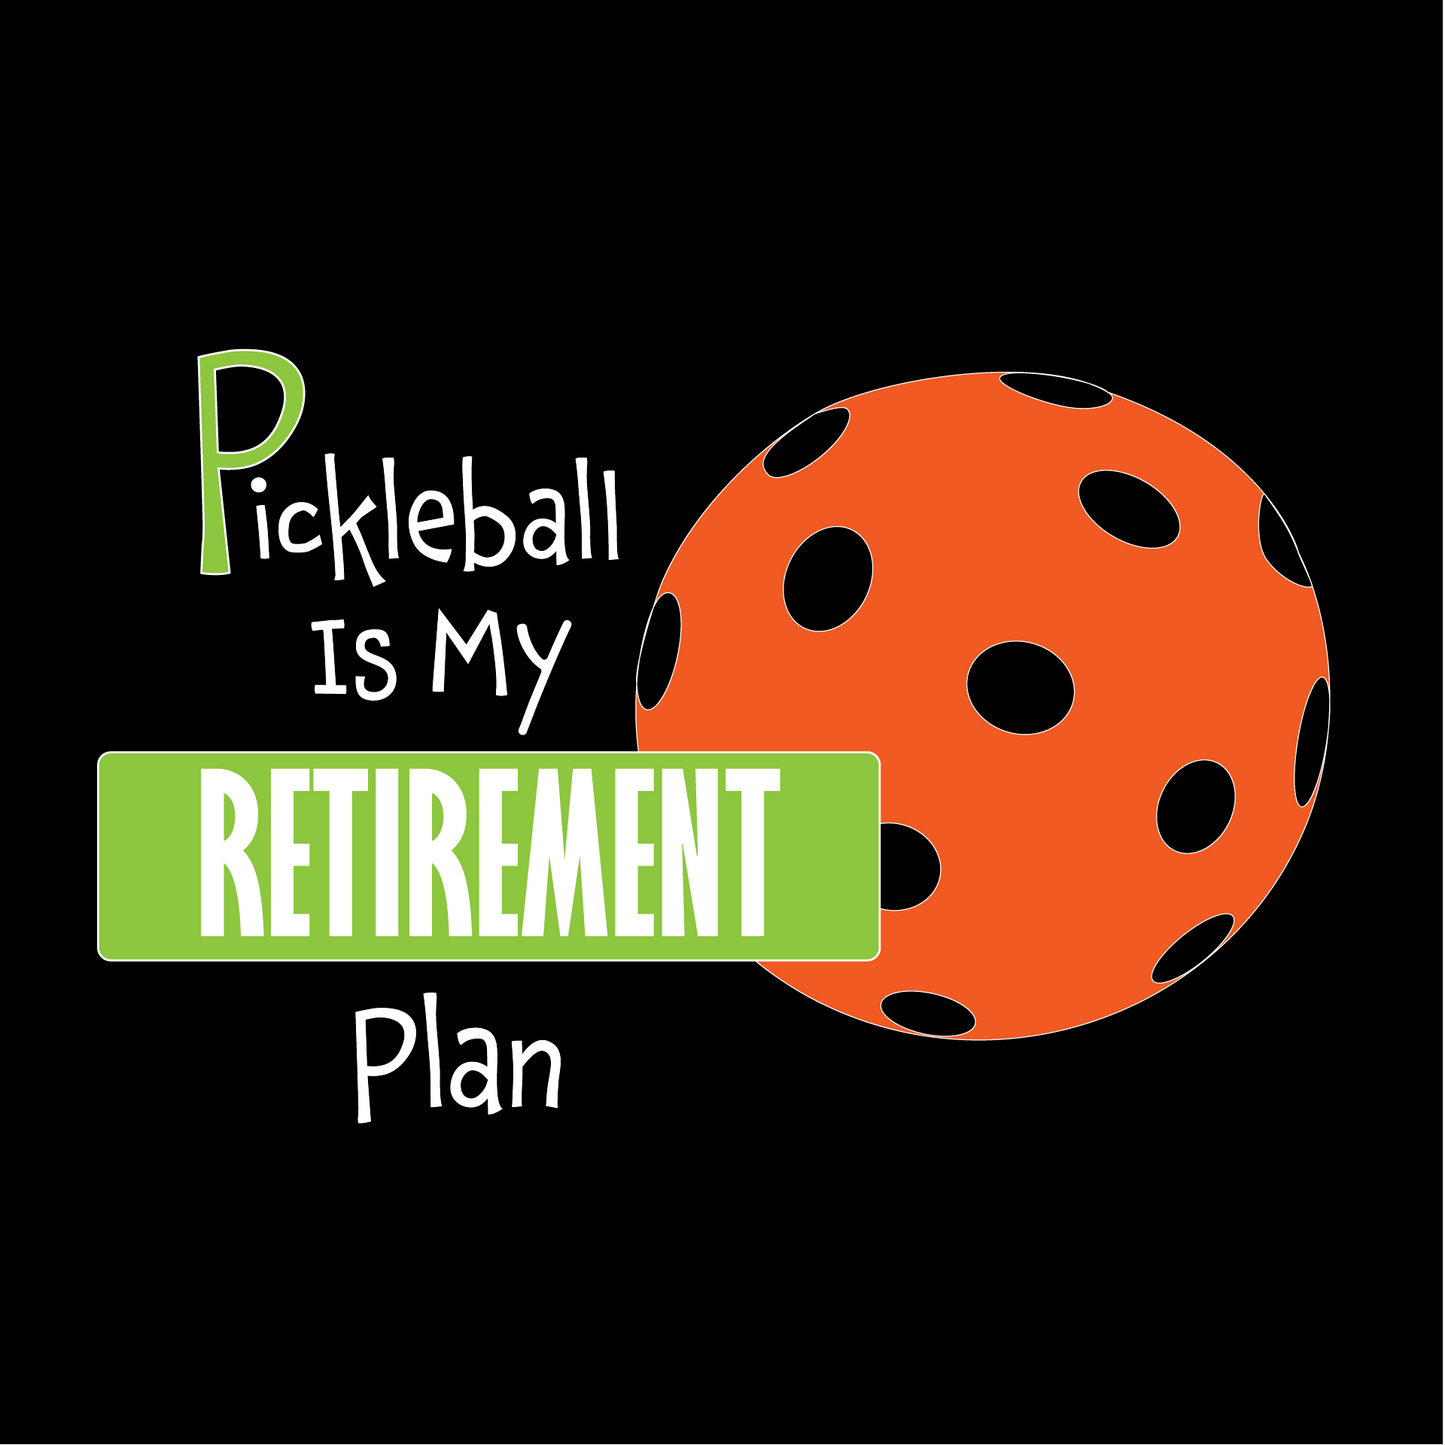 Pickleball Is My Retirement Plan | Men's Sleeveless Pickleball Shirts | 100% Polyester